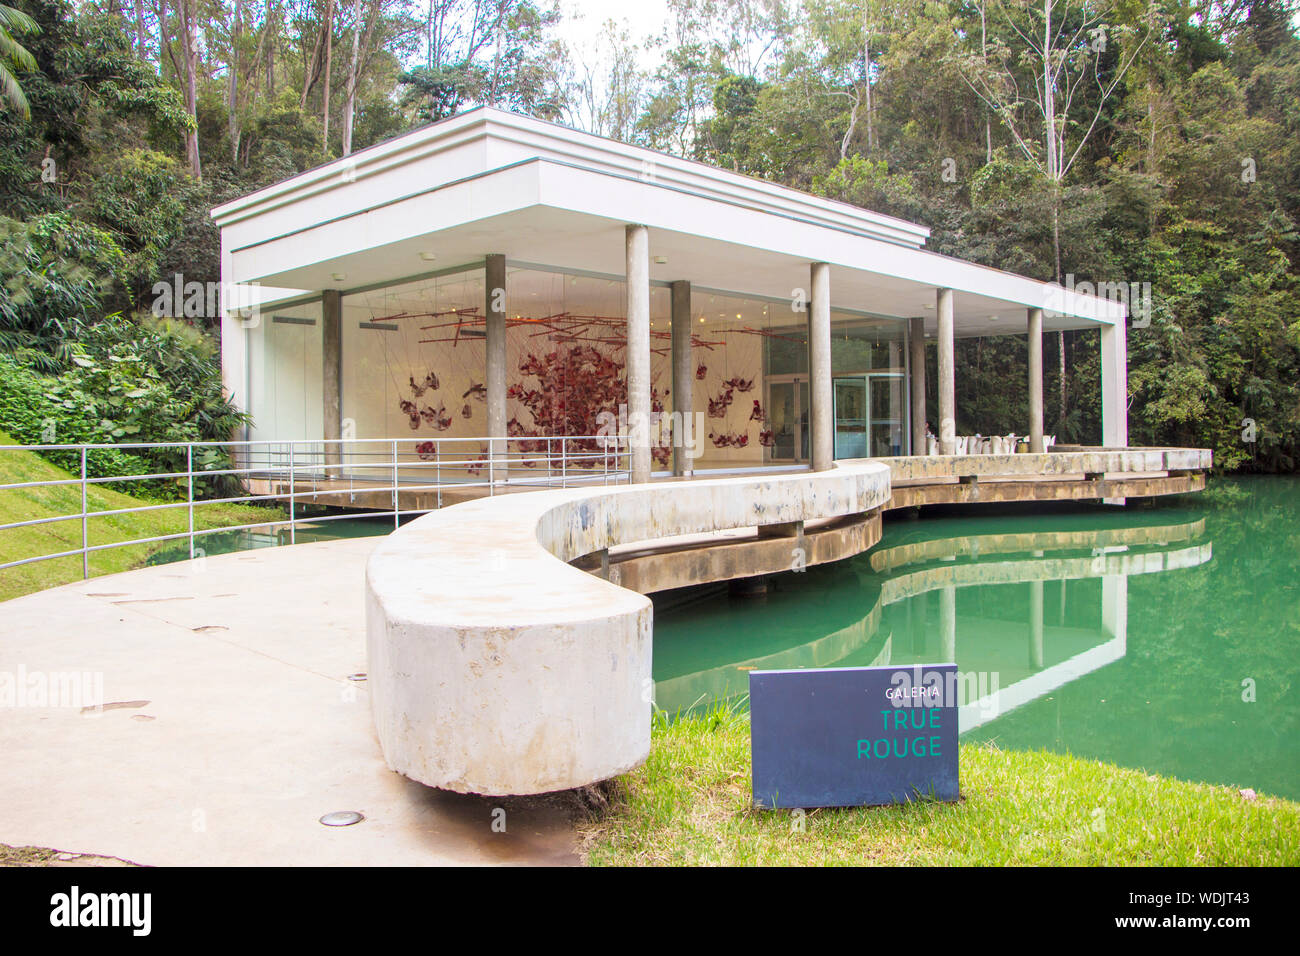 Vrai Rouge Gallery, Inhotim, Institut d'Art Contemporain et le jardin botanique, Brumadinho, Minas Gerais, Brésil Banque D'Images